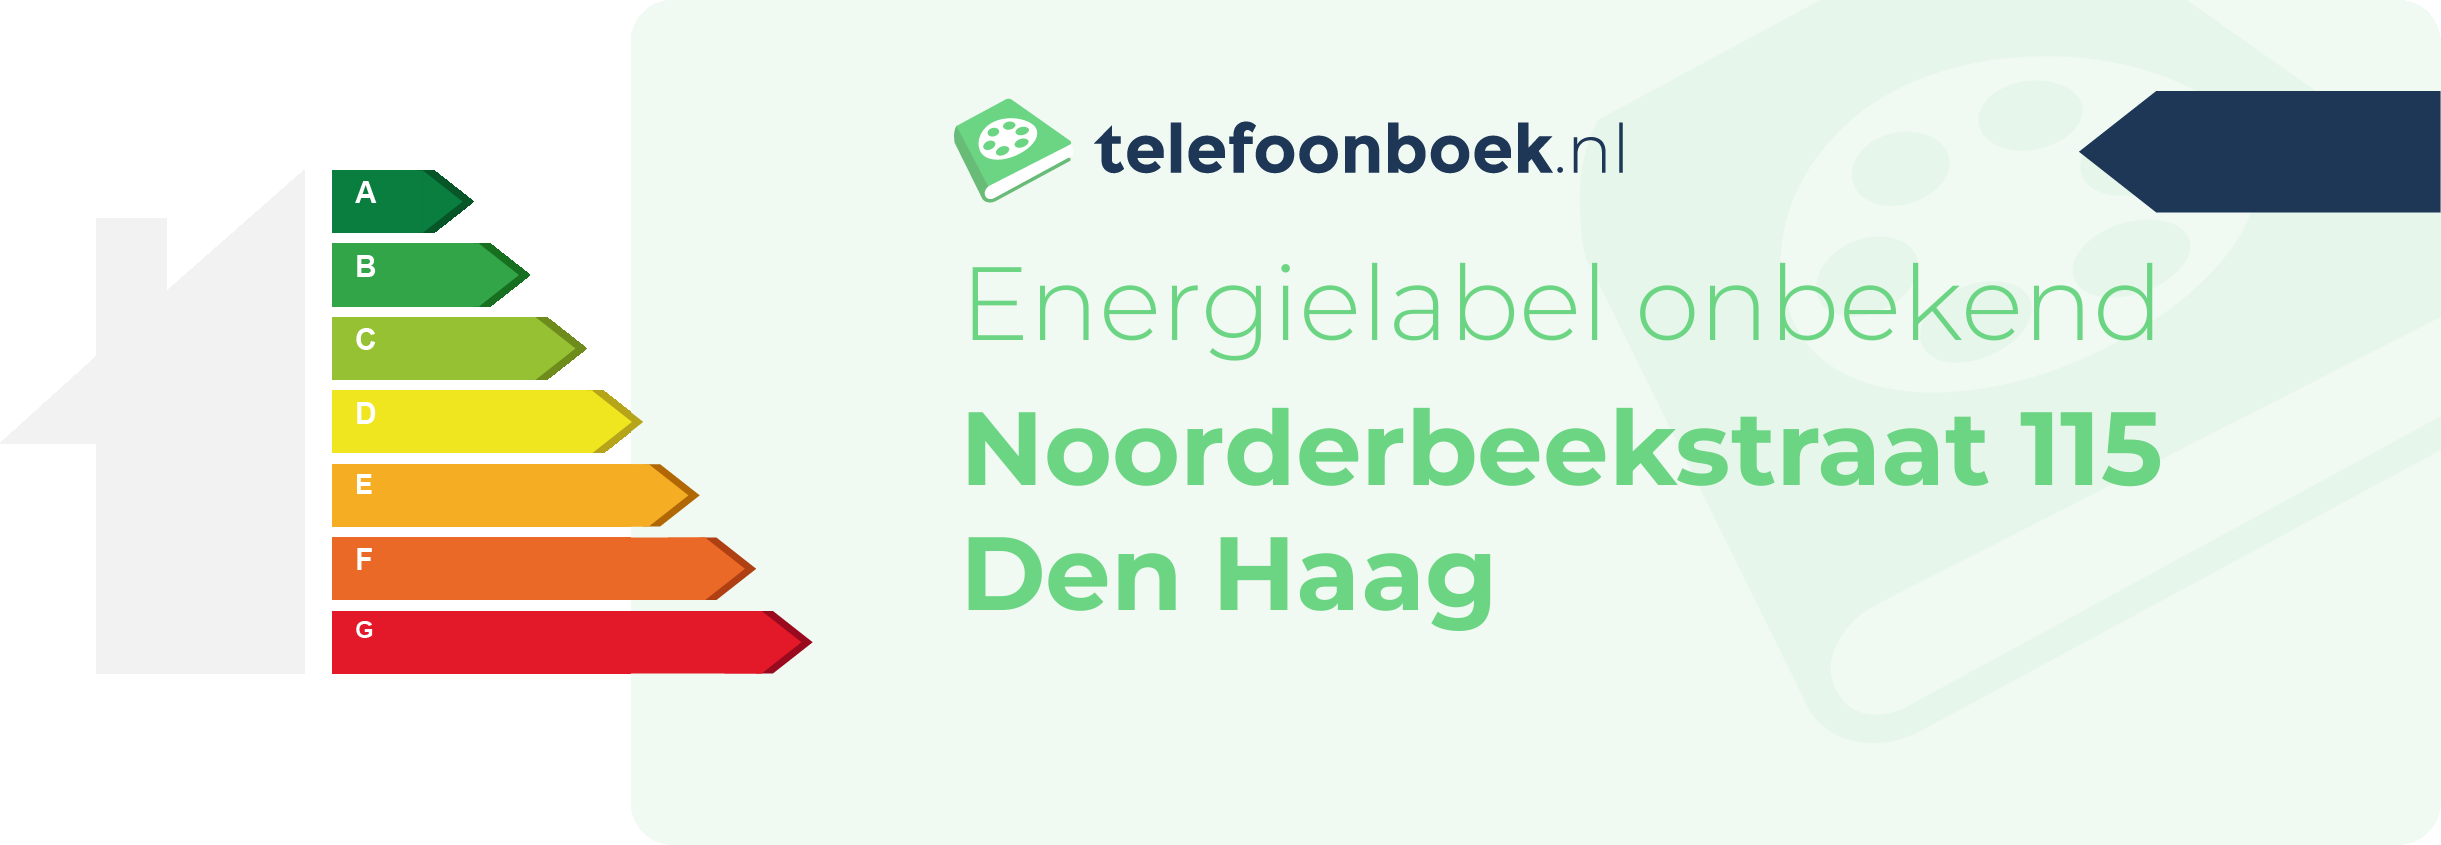 Energielabel Noorderbeekstraat 115 Den Haag